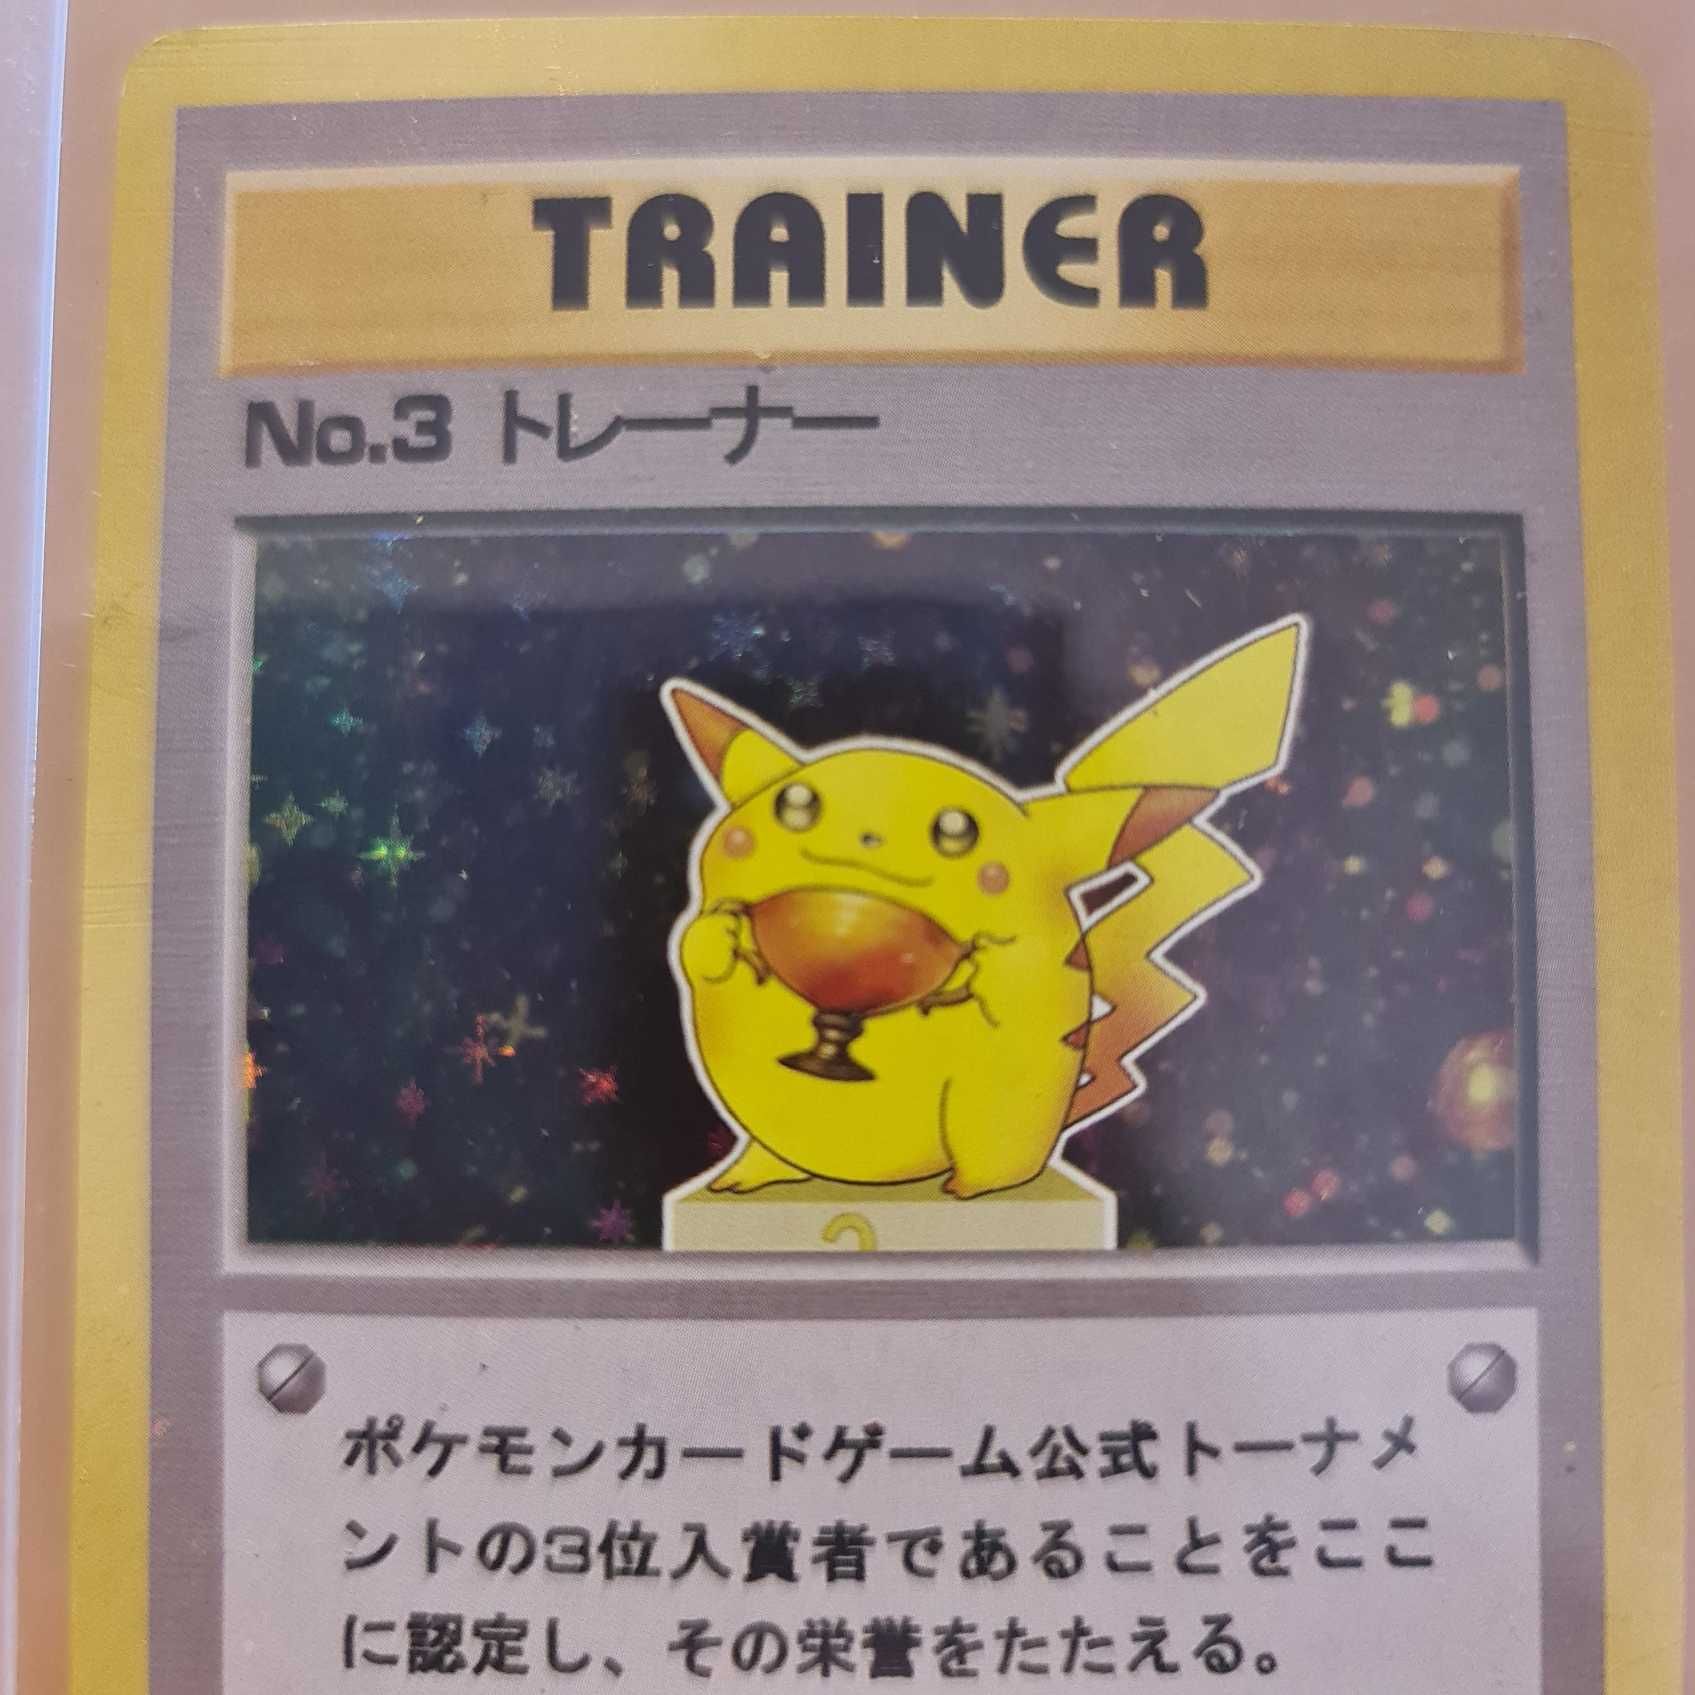 Carta Pokémon Pikachu No. 3 Trainer - Capa Protetora Incluída